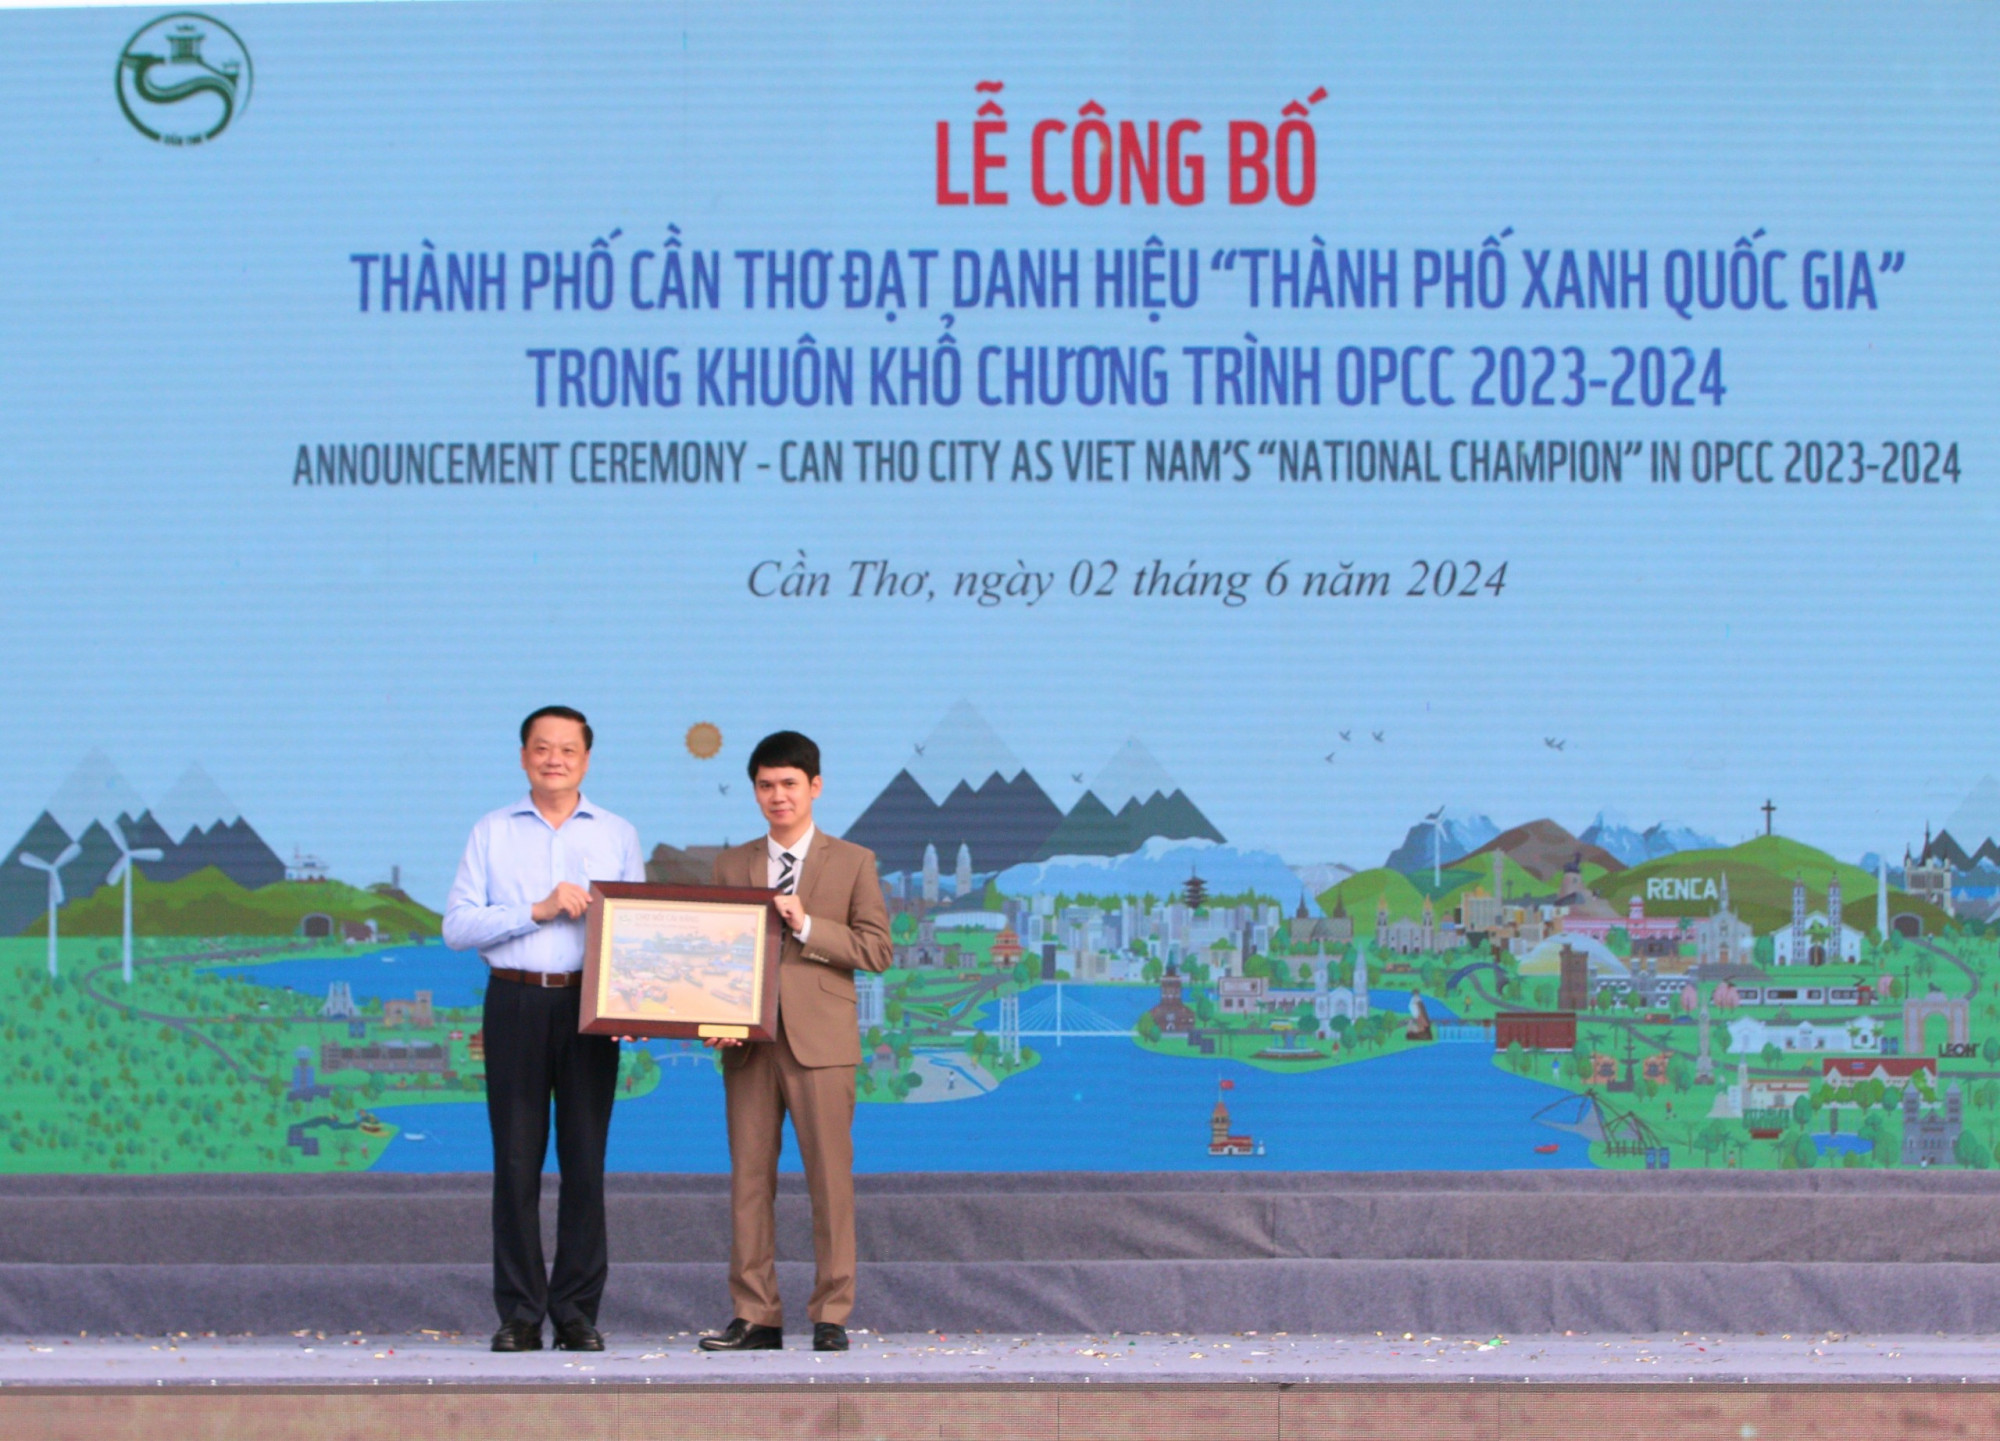 đại diện Tổ chức Quốc tế về Bảo tồn thiên nhiên tại Việt Nam đã công bố, trao tặng danh hiệu “Thành phố Xanh quốc gia năm 2024 cho TP Cần Thơ”.